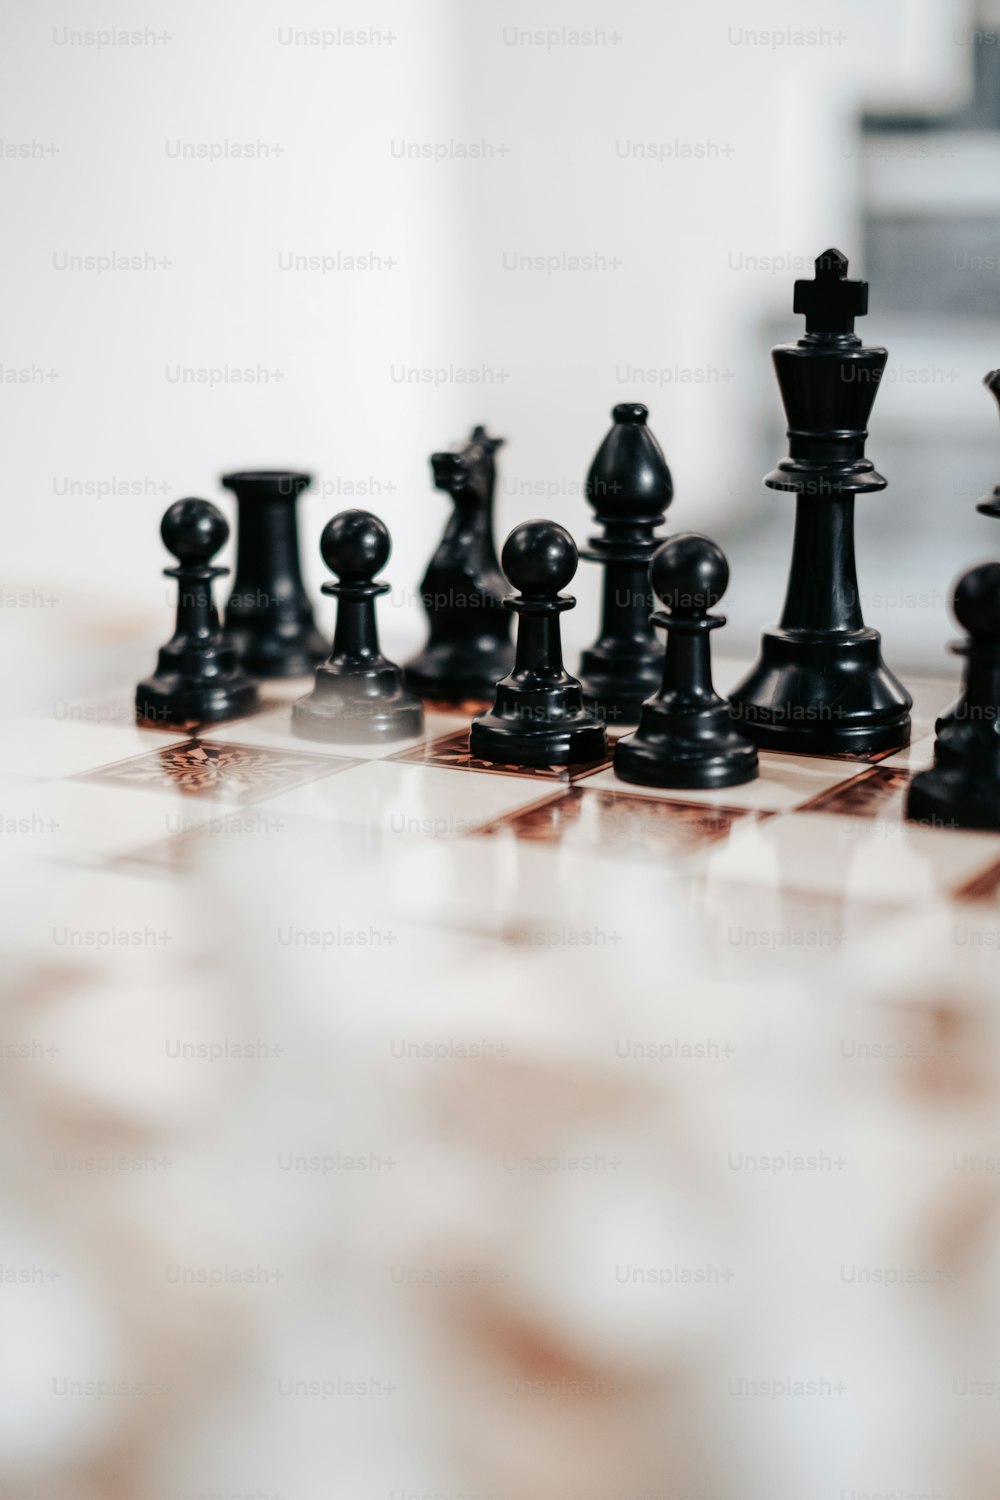 um tabuleiro de xadrez com peças de xadrez preto e branco